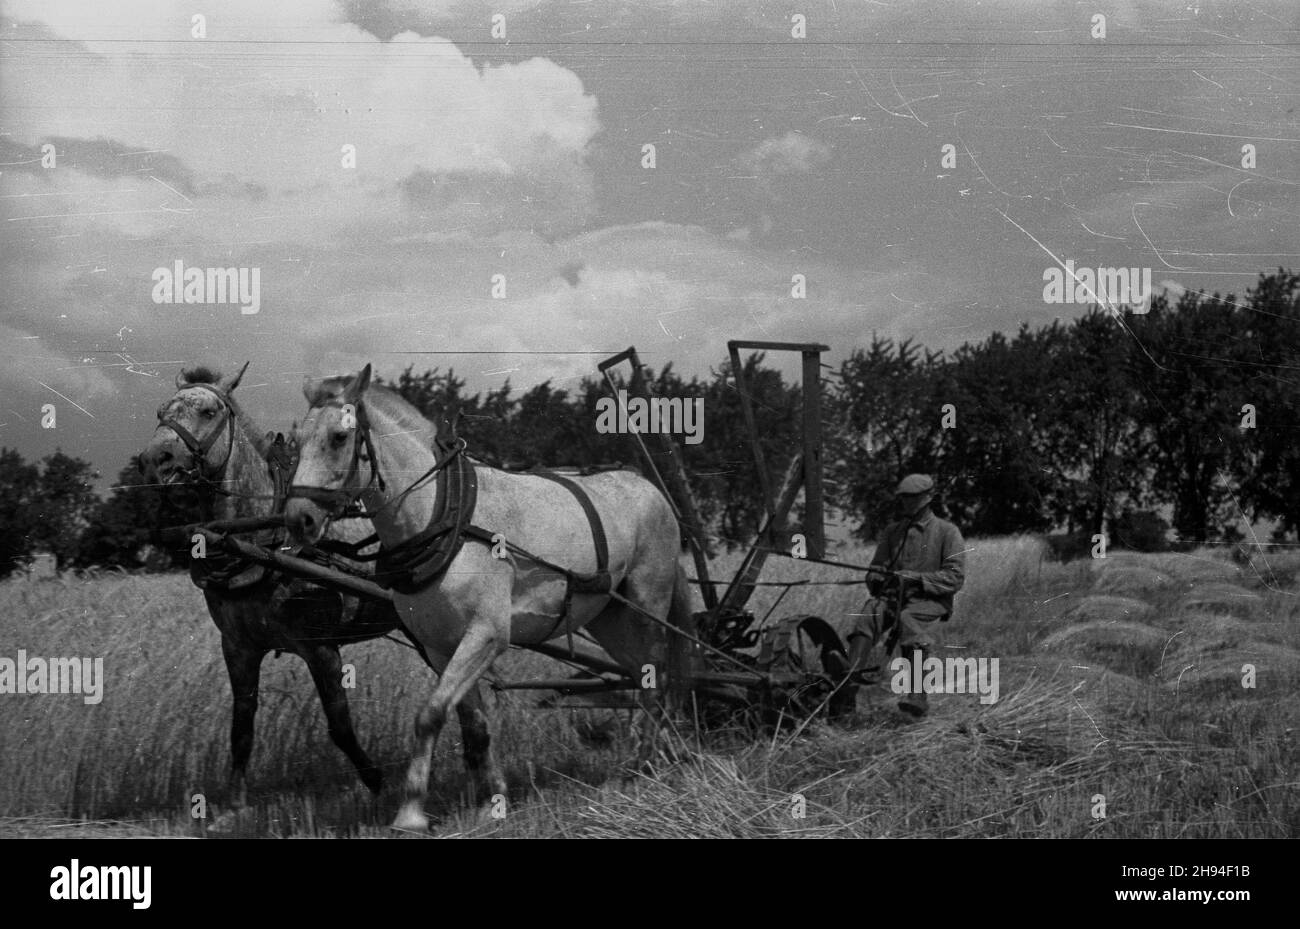 1947-07. Prace ¿niwne. Nz. rolnik kosi zbo¿e.  Dok³adny dzieñ wydarzenia nieustalony.  bk/ak  PAP      July 1947. Harvest - corn reaping.   bk/ak  PAP Stock Photo